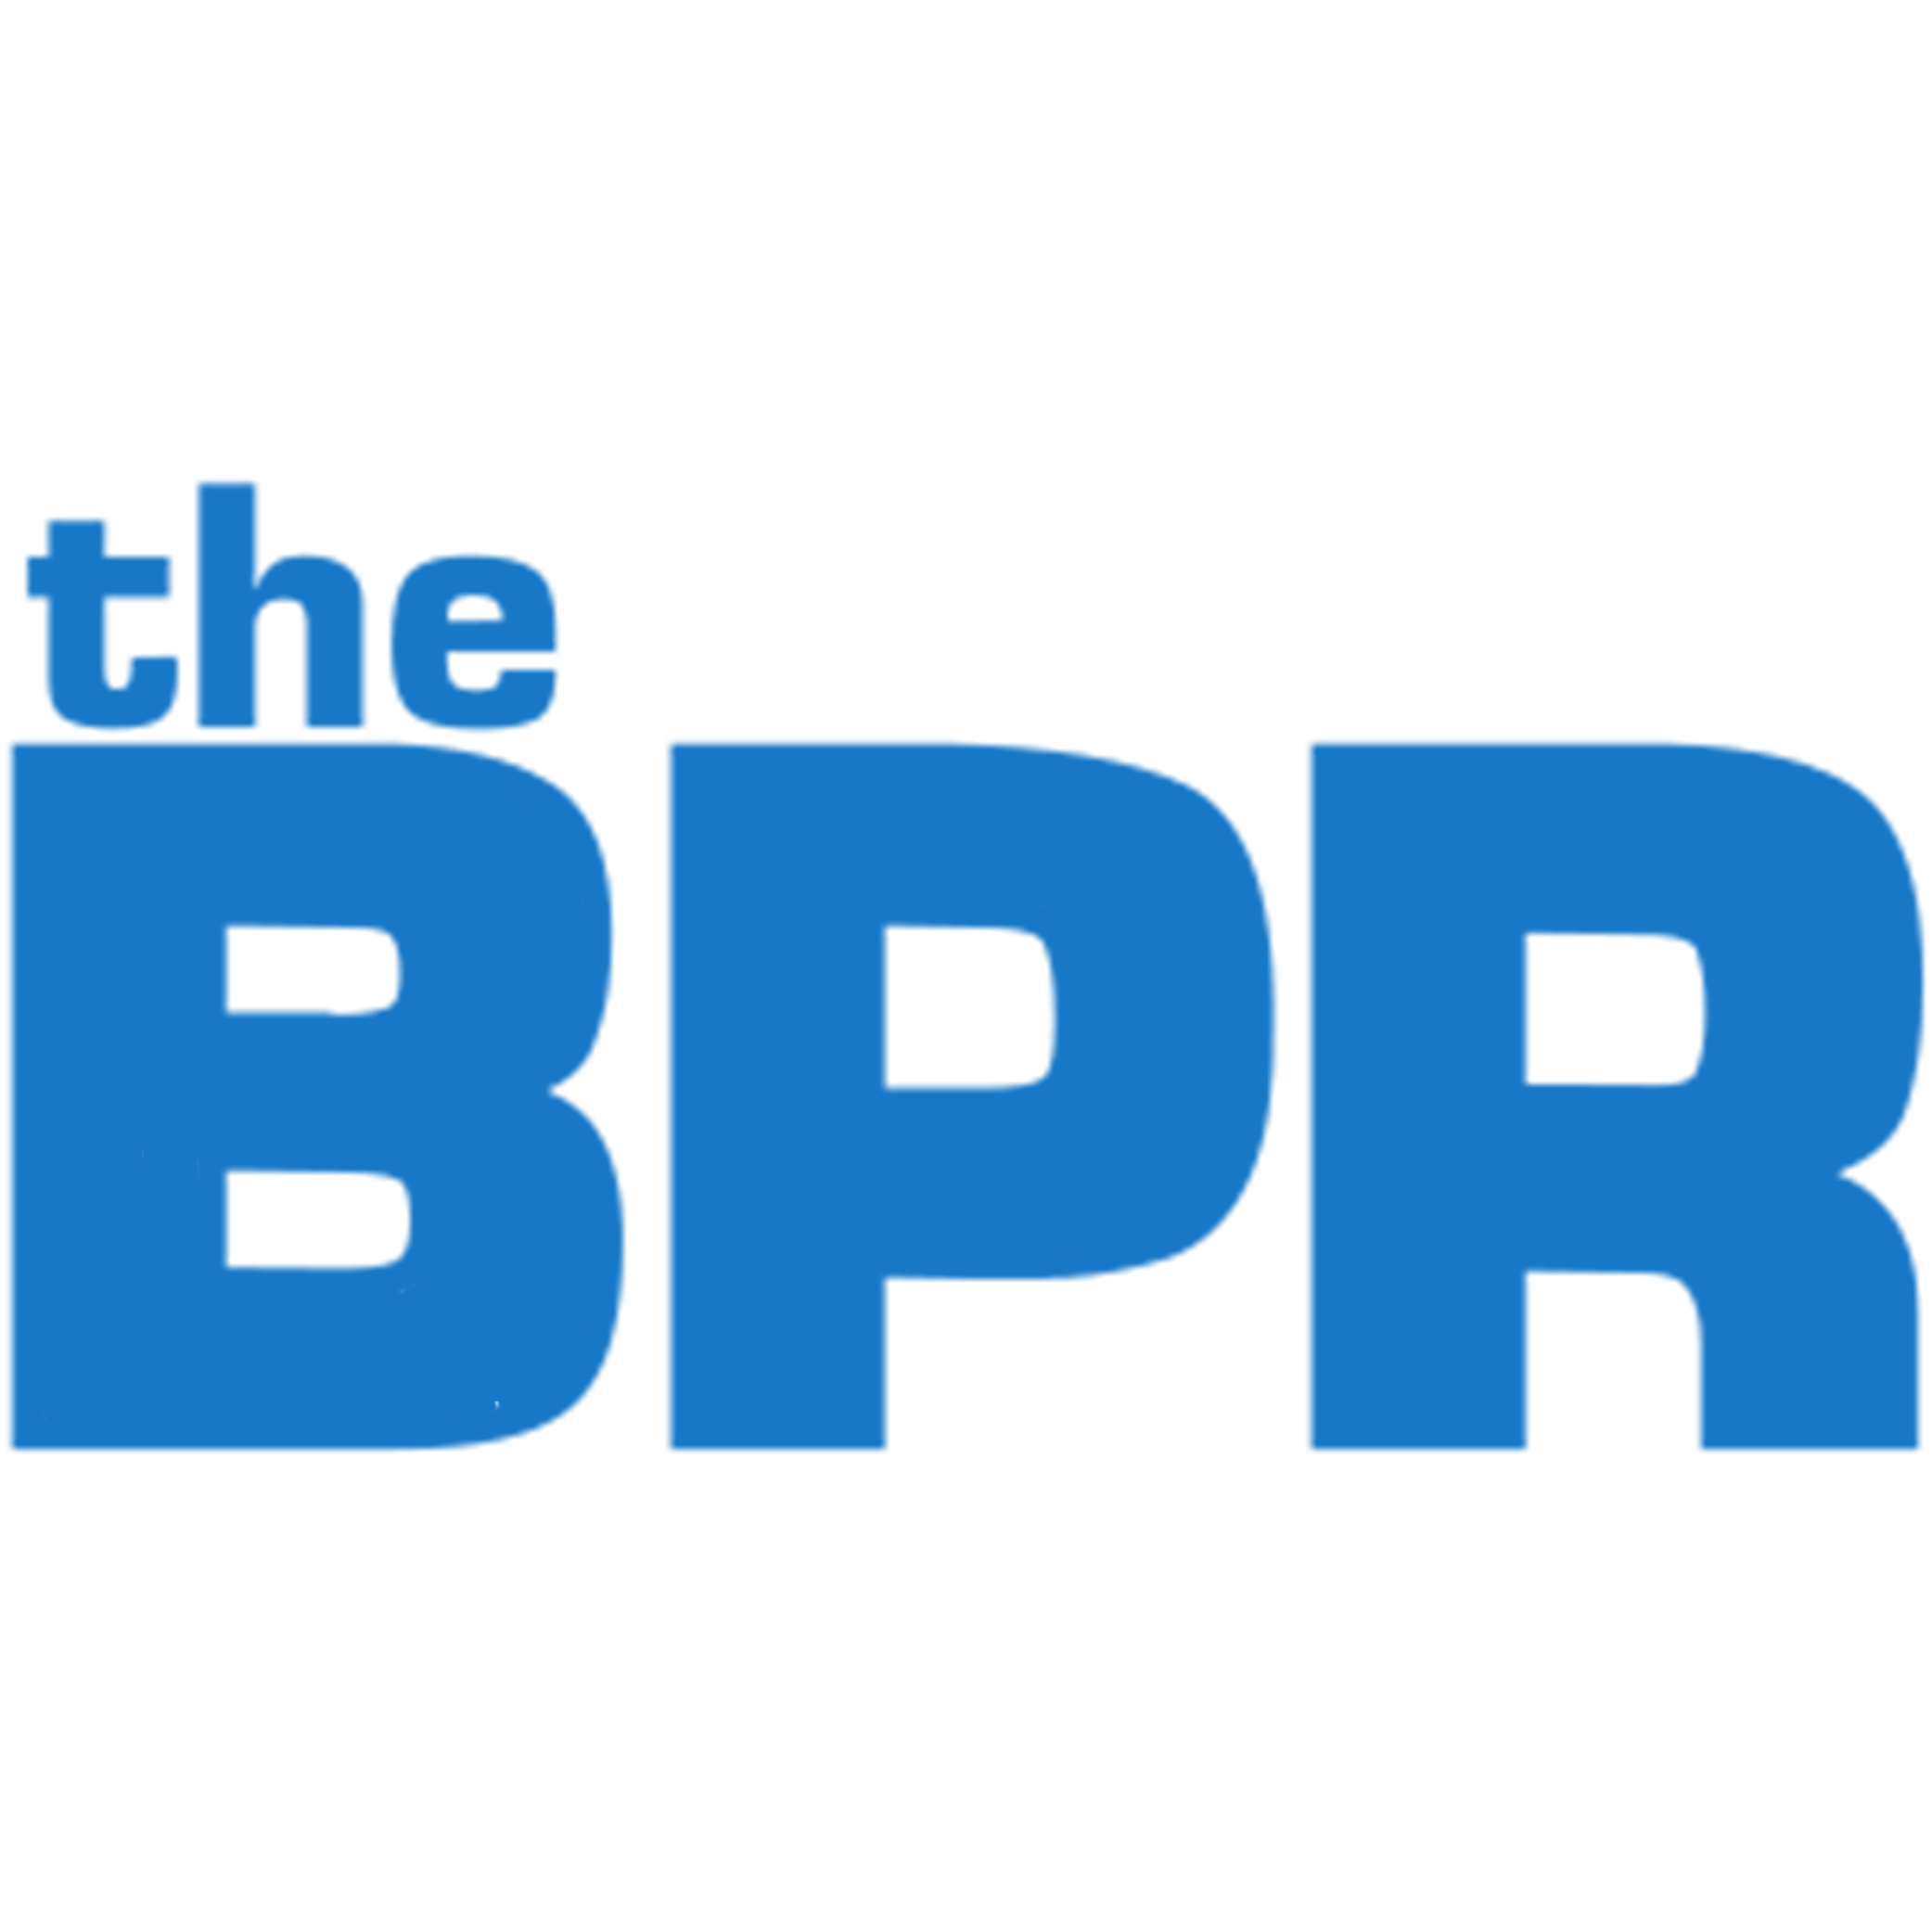 Le BPR - Le référentiel des processus opérationnels - Rendement optimal